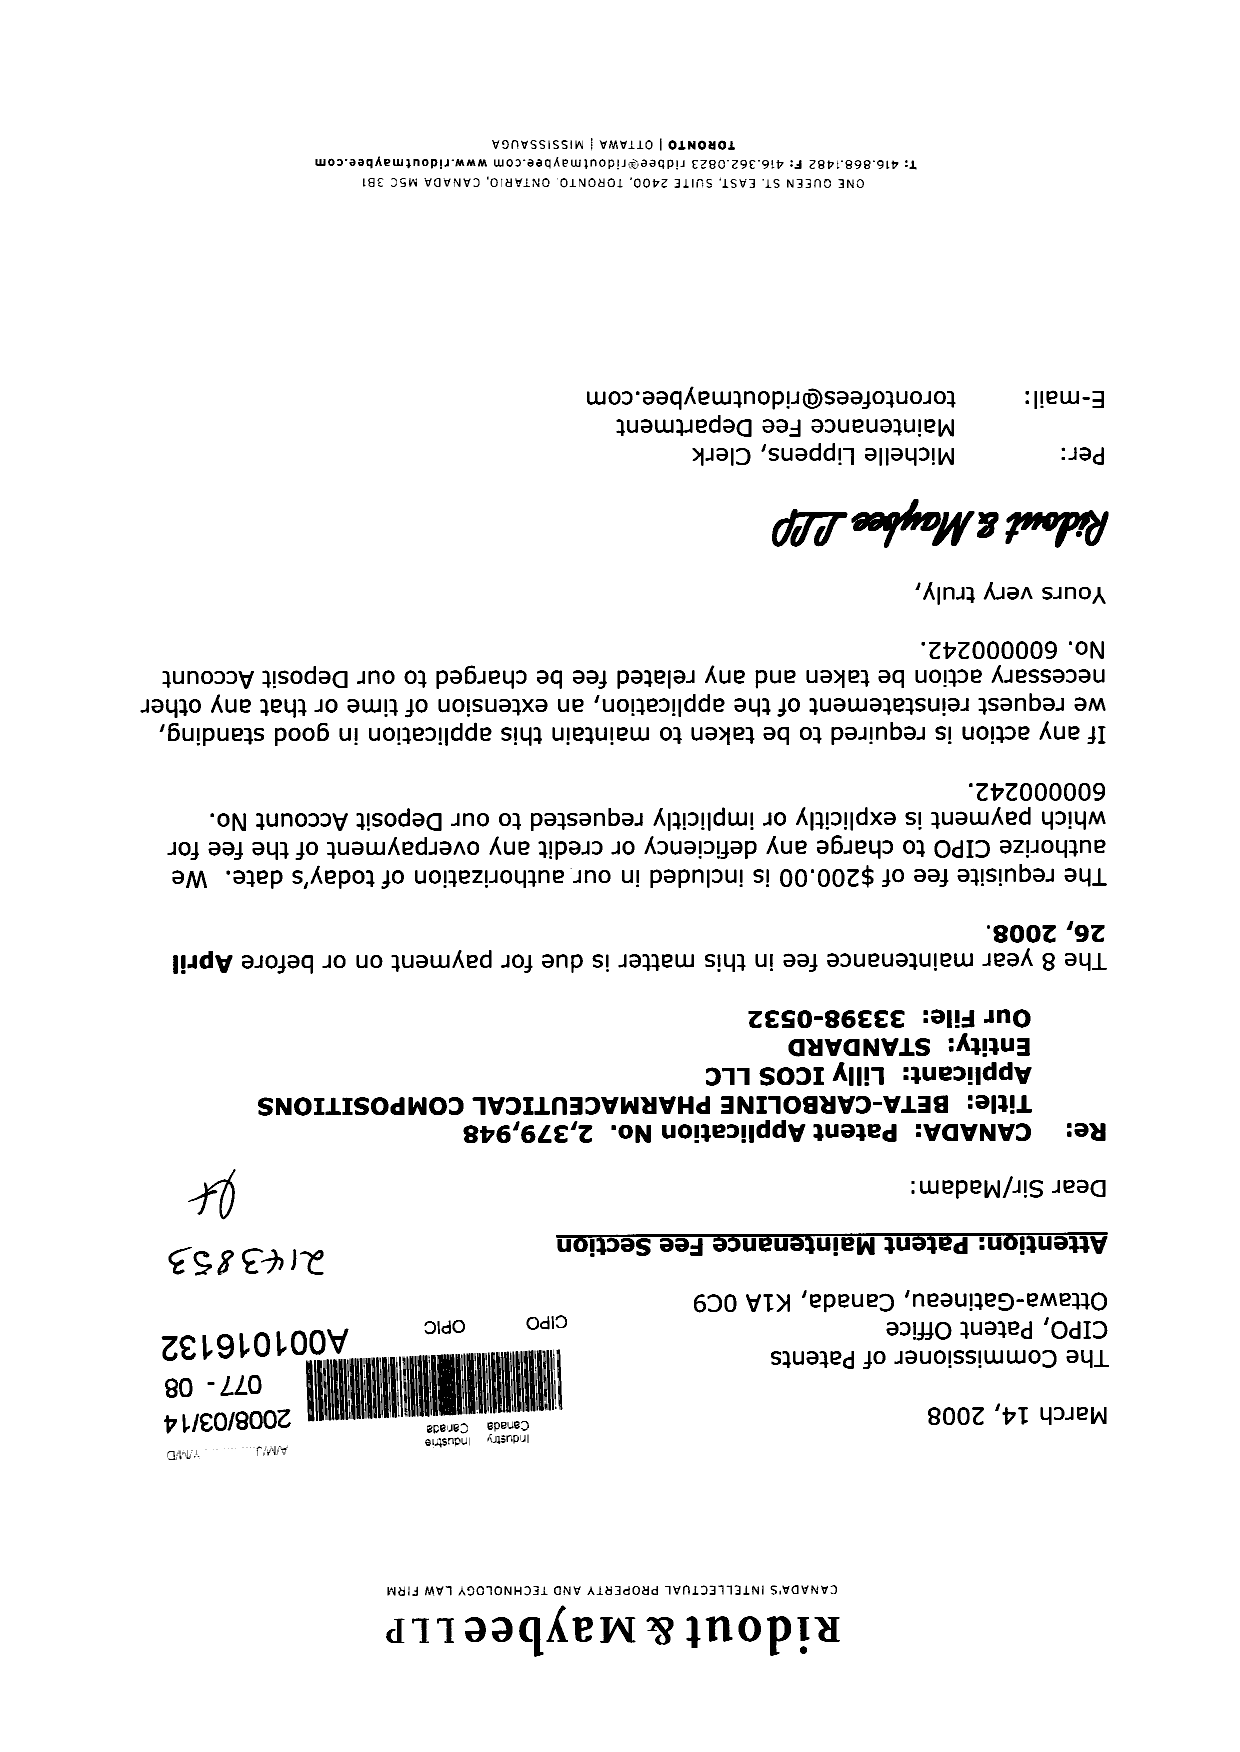 Document de brevet canadien 2379948. Taxes 20071214. Image 1 de 1